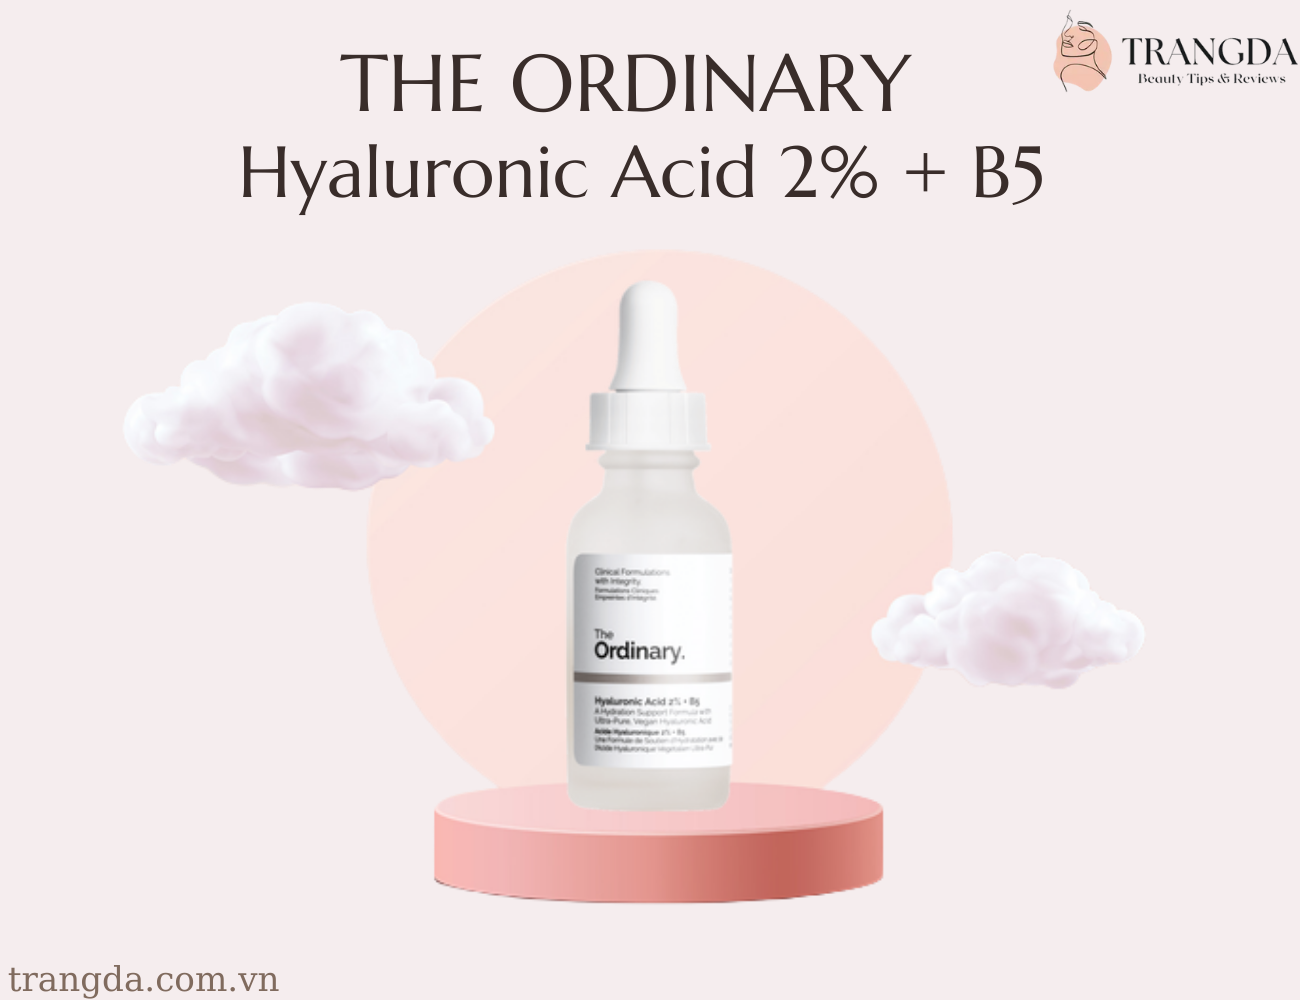 Serum dưỡng ẩm The Ordinary Hyaluronic Acid 2% + B5